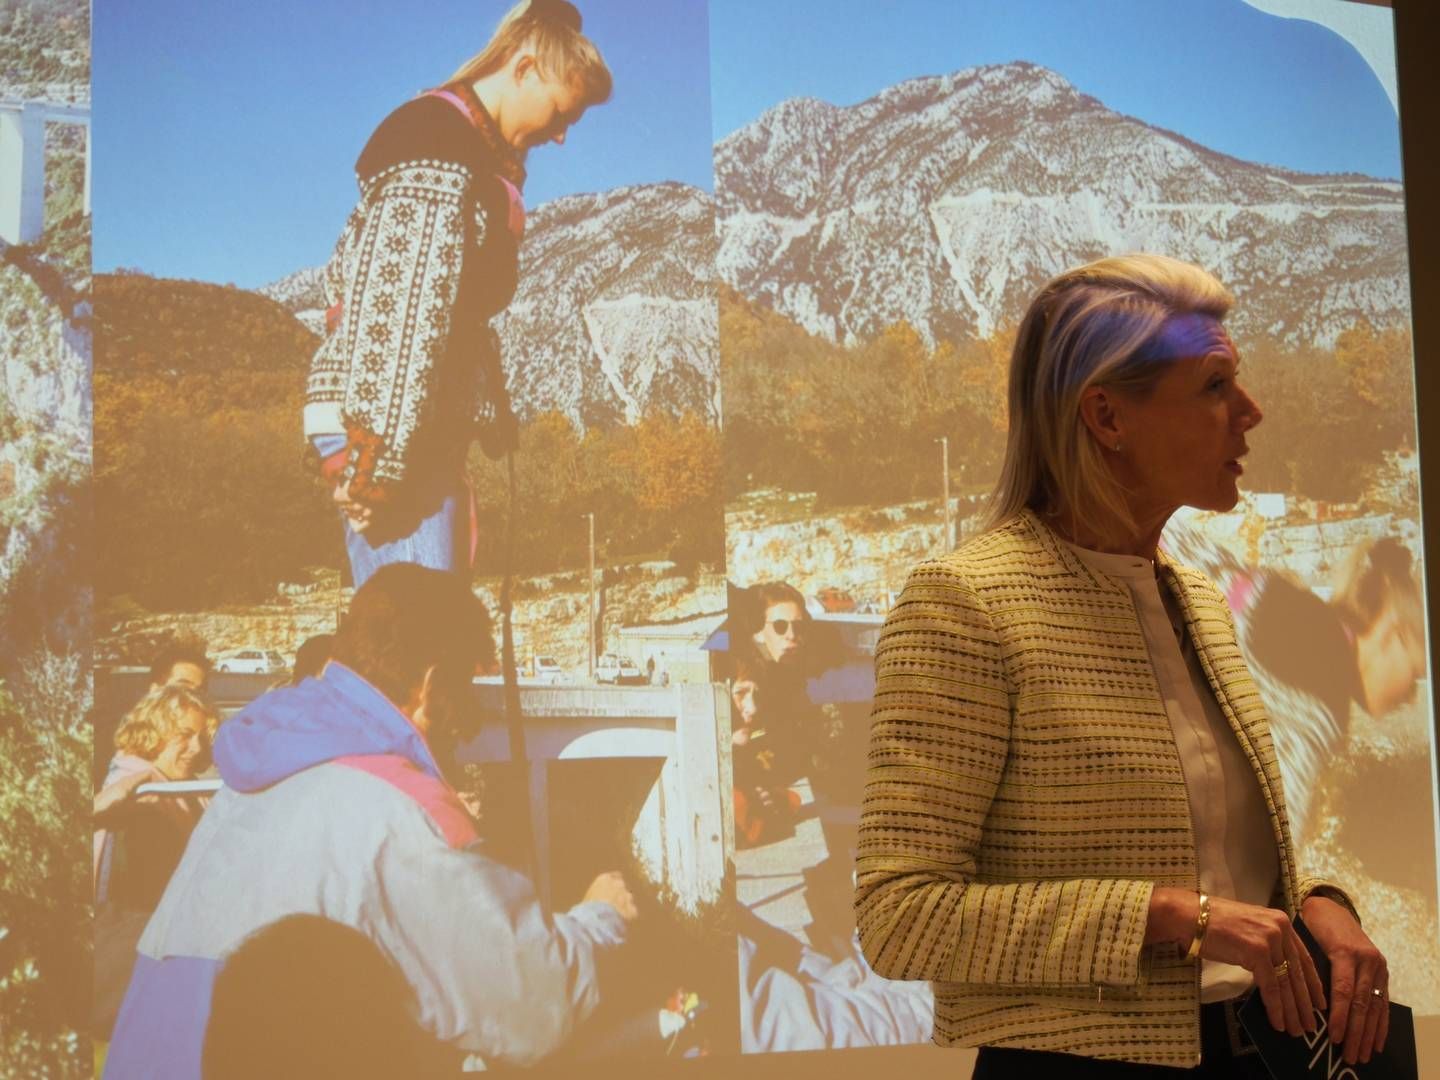 DNB-sjef Kjerstin Braathen foran et bilde av en yngre utgave av seg selv rett før et strikkhopp. – Jeg har alltid vært dårlig til å si nei til en utfordring, sier hun. | Foto: Ida Oftebro